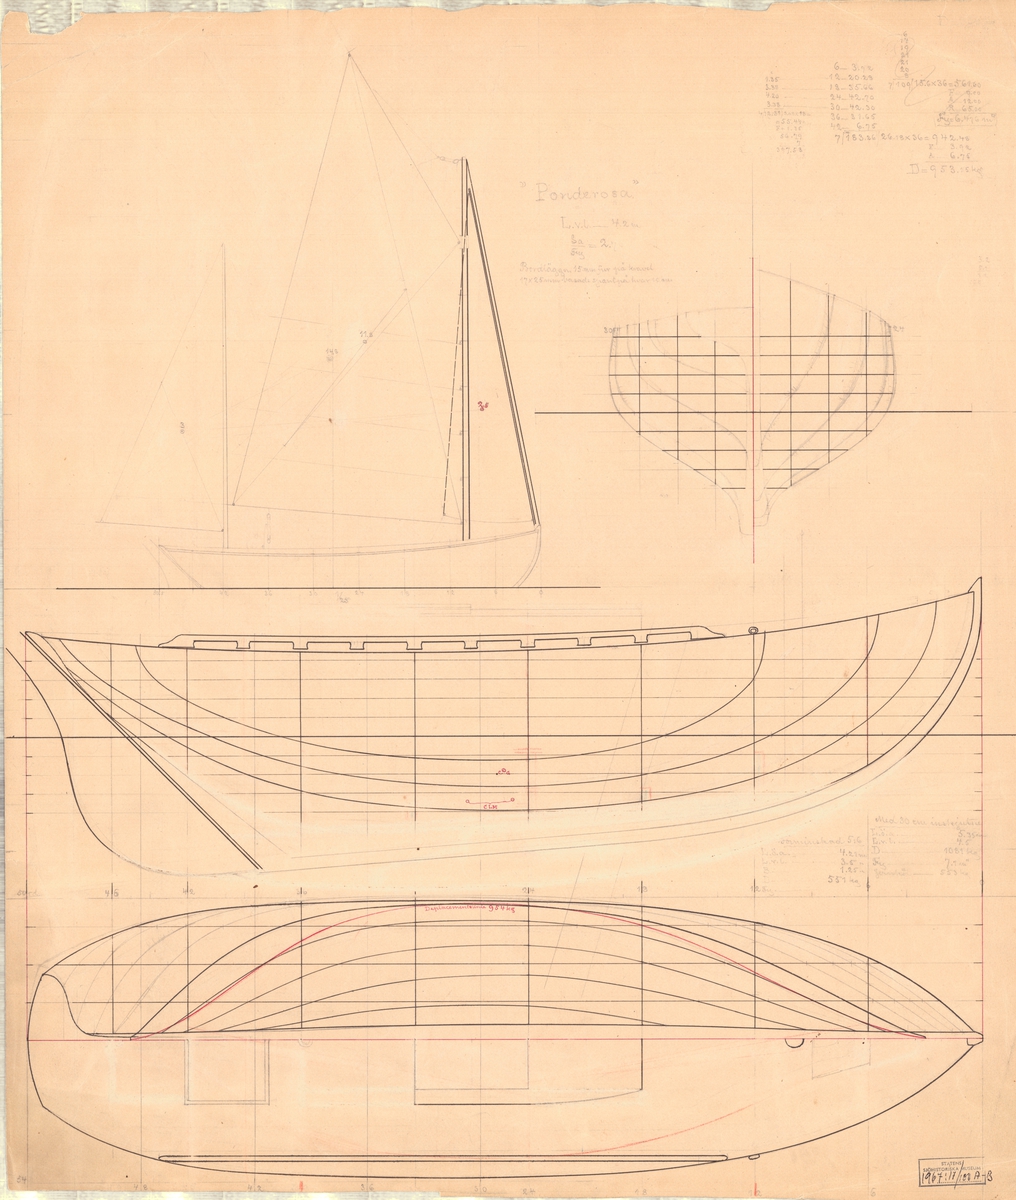 Tvåmastad segelbåt
Spantruta, rigg-, profil- och linjeritning